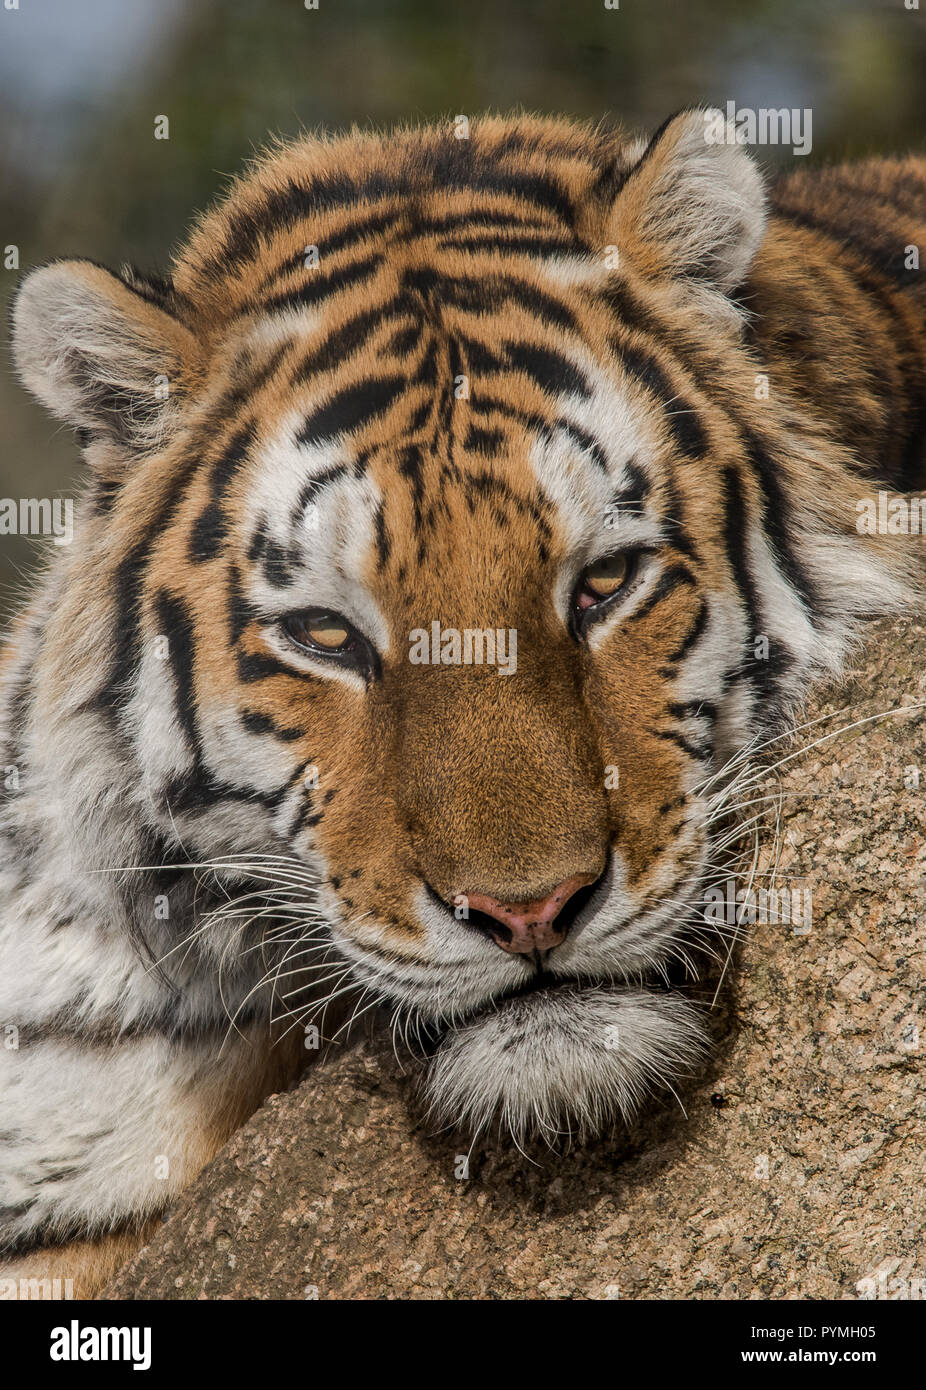 Tiger caminar y sentarse Foto de stock